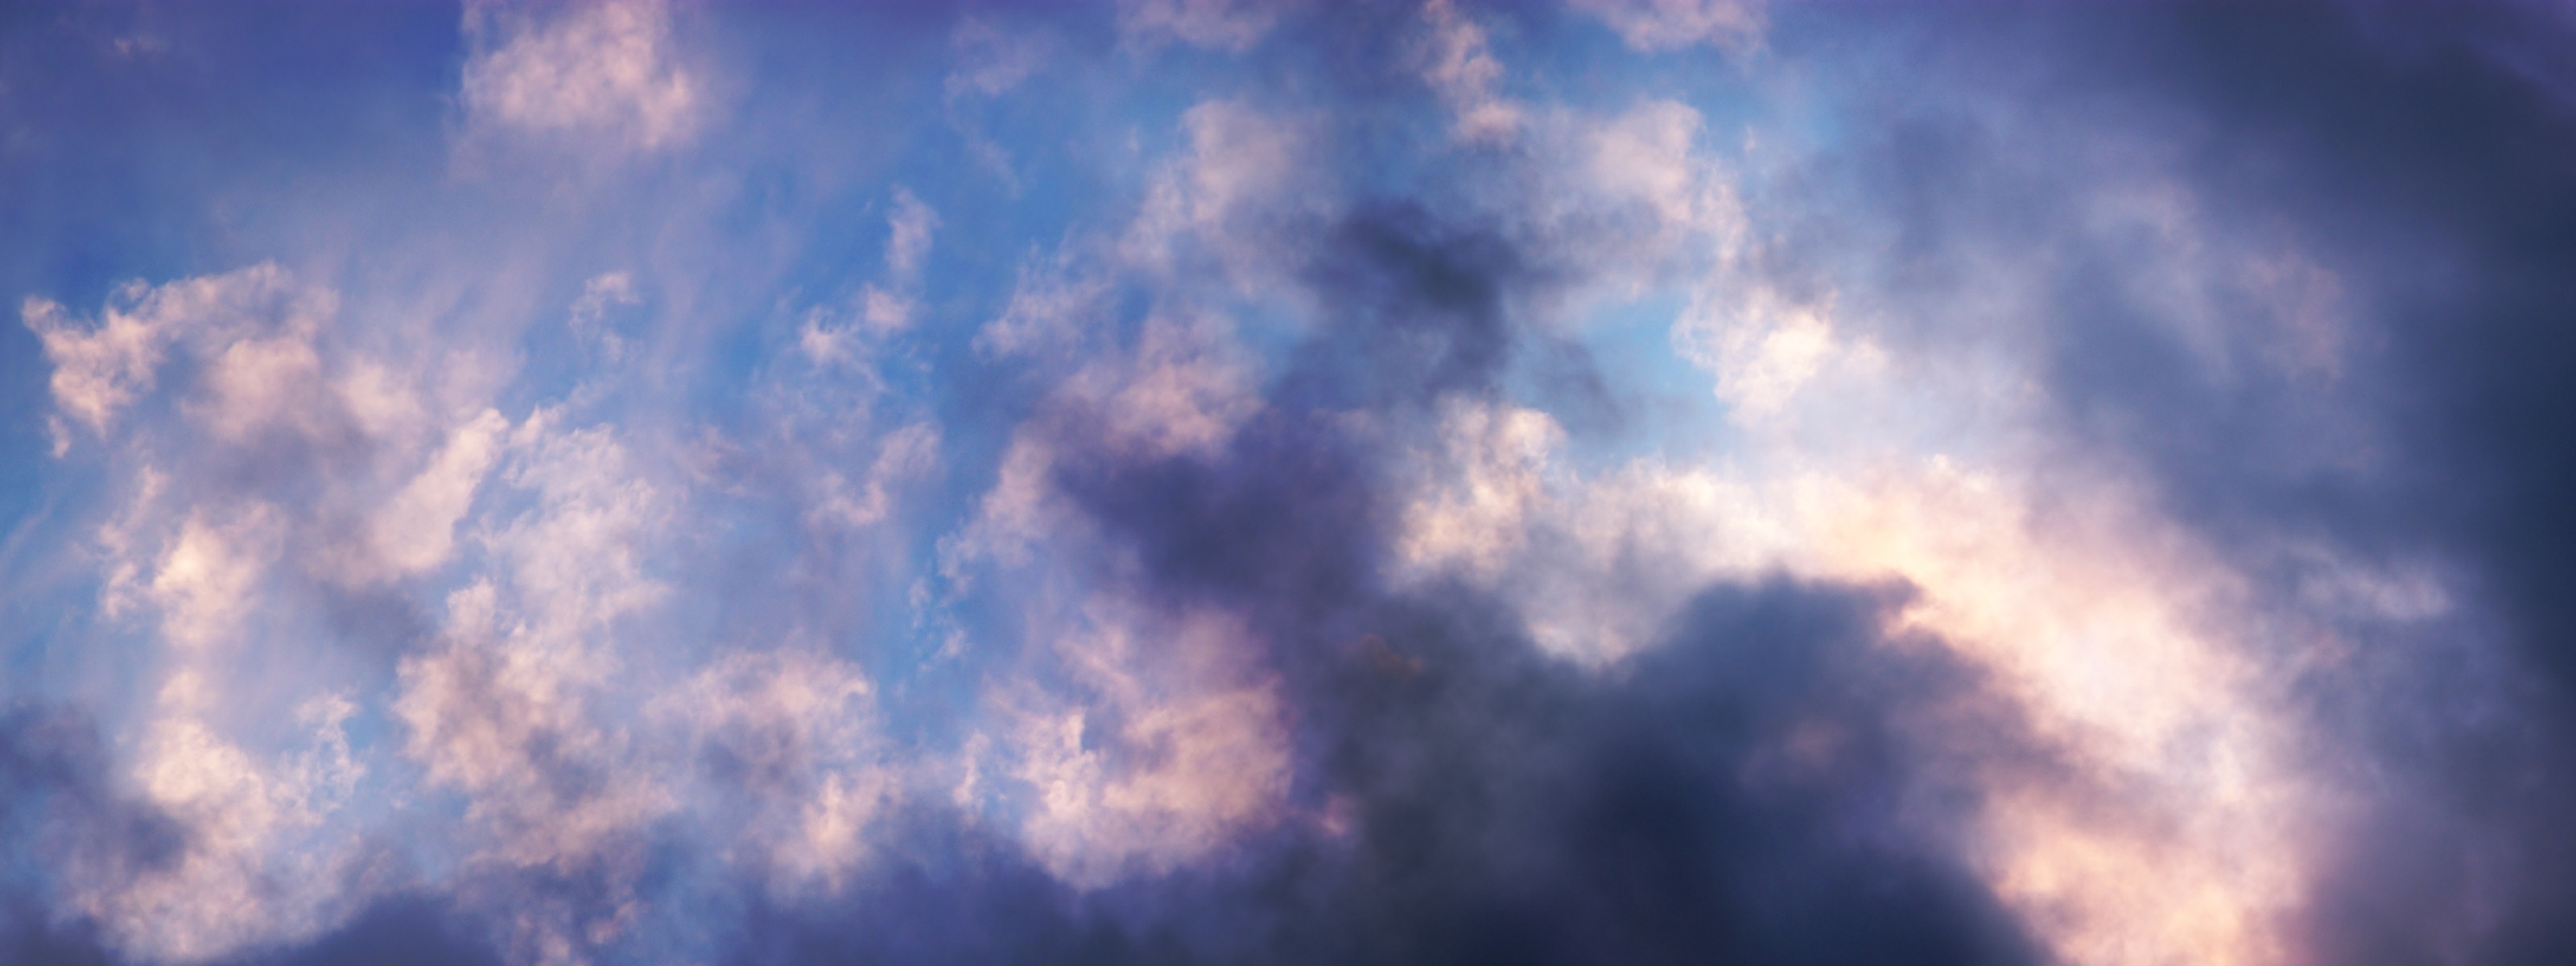 Скачать обои бесплатно Облака, Фон, Небо картинка на рабочий стол ПК